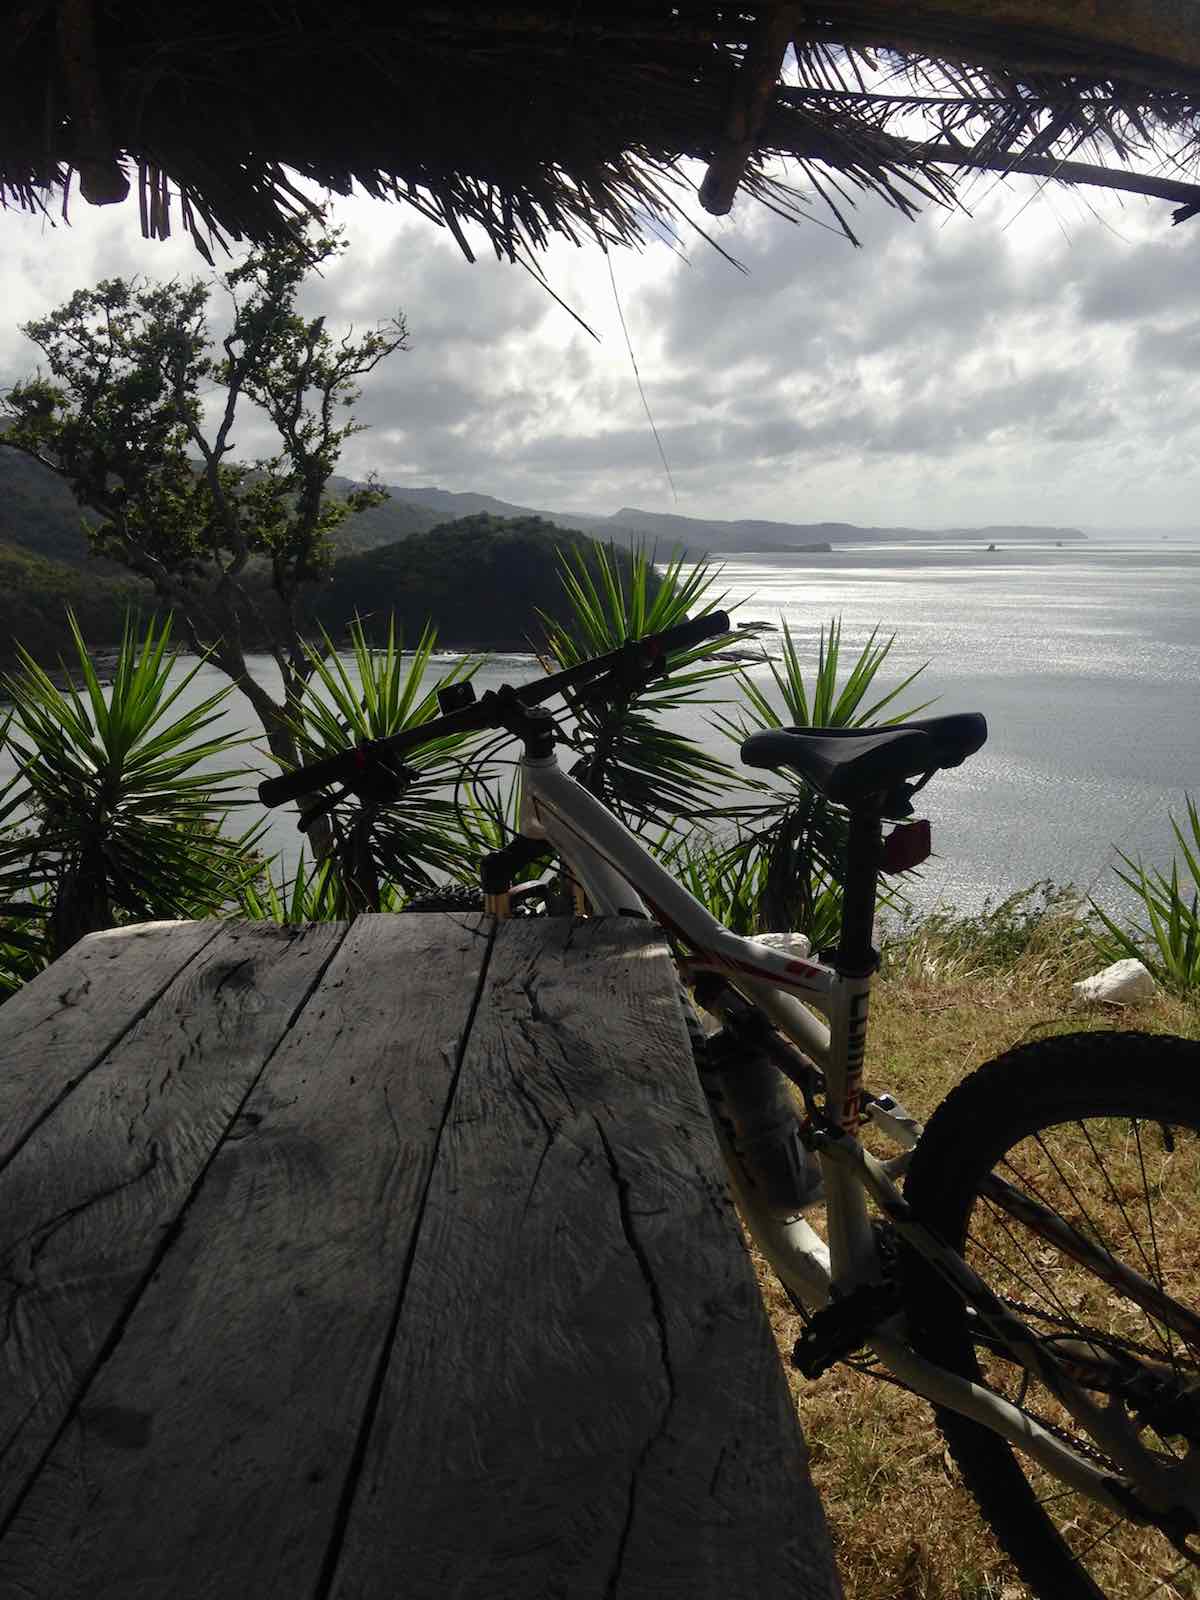 bikerumor pic of the day cycling in San Juan del Sur in Nicaragua